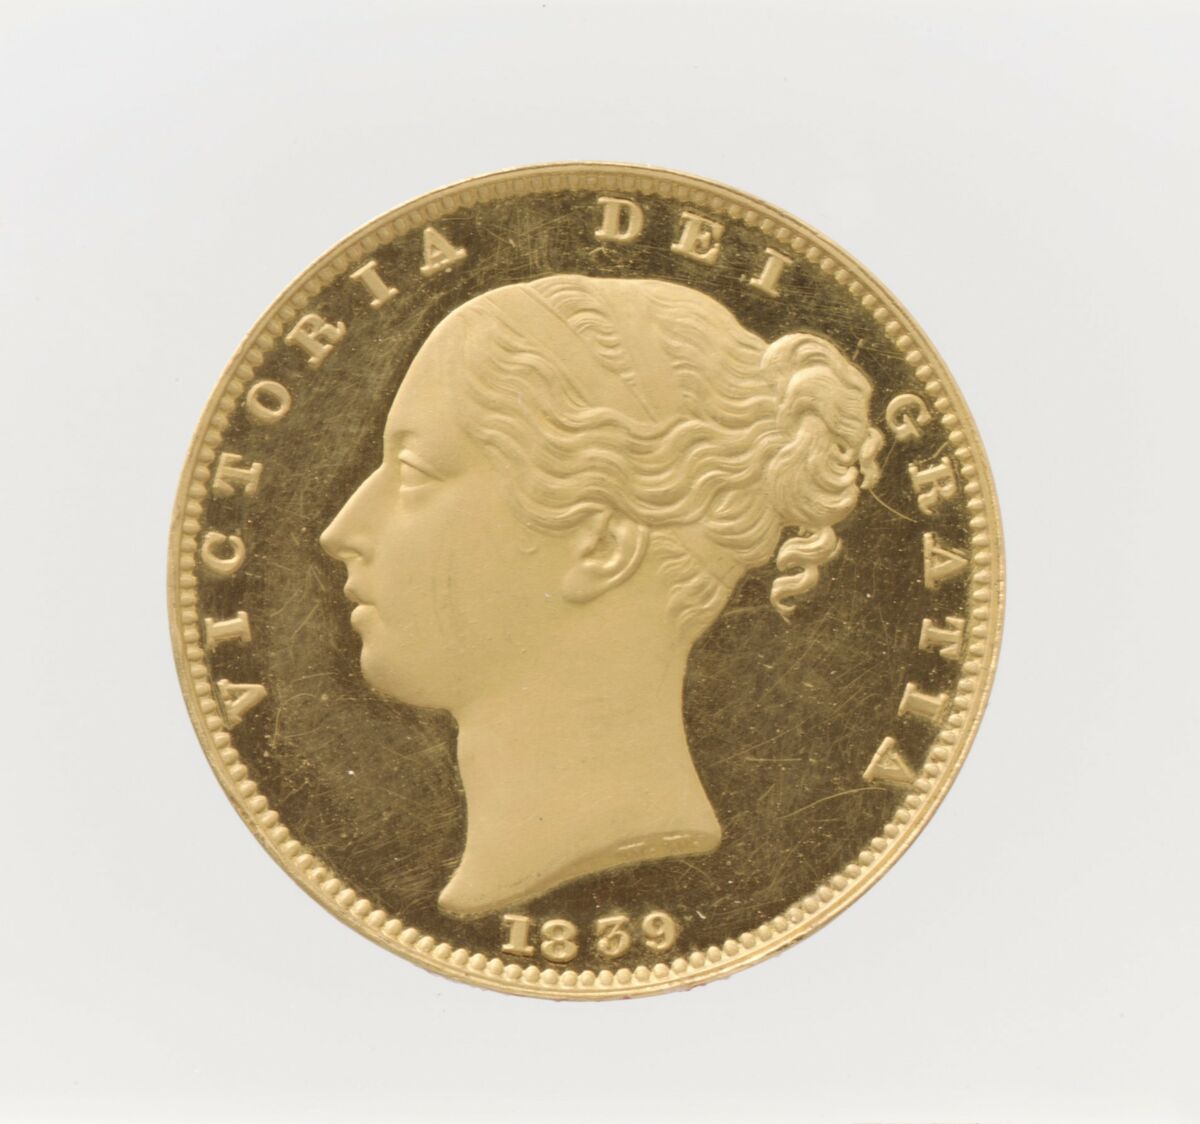 GFD 3/35: Sovereign mit dem Abbild der Königin Victoria (Münze von 1839)